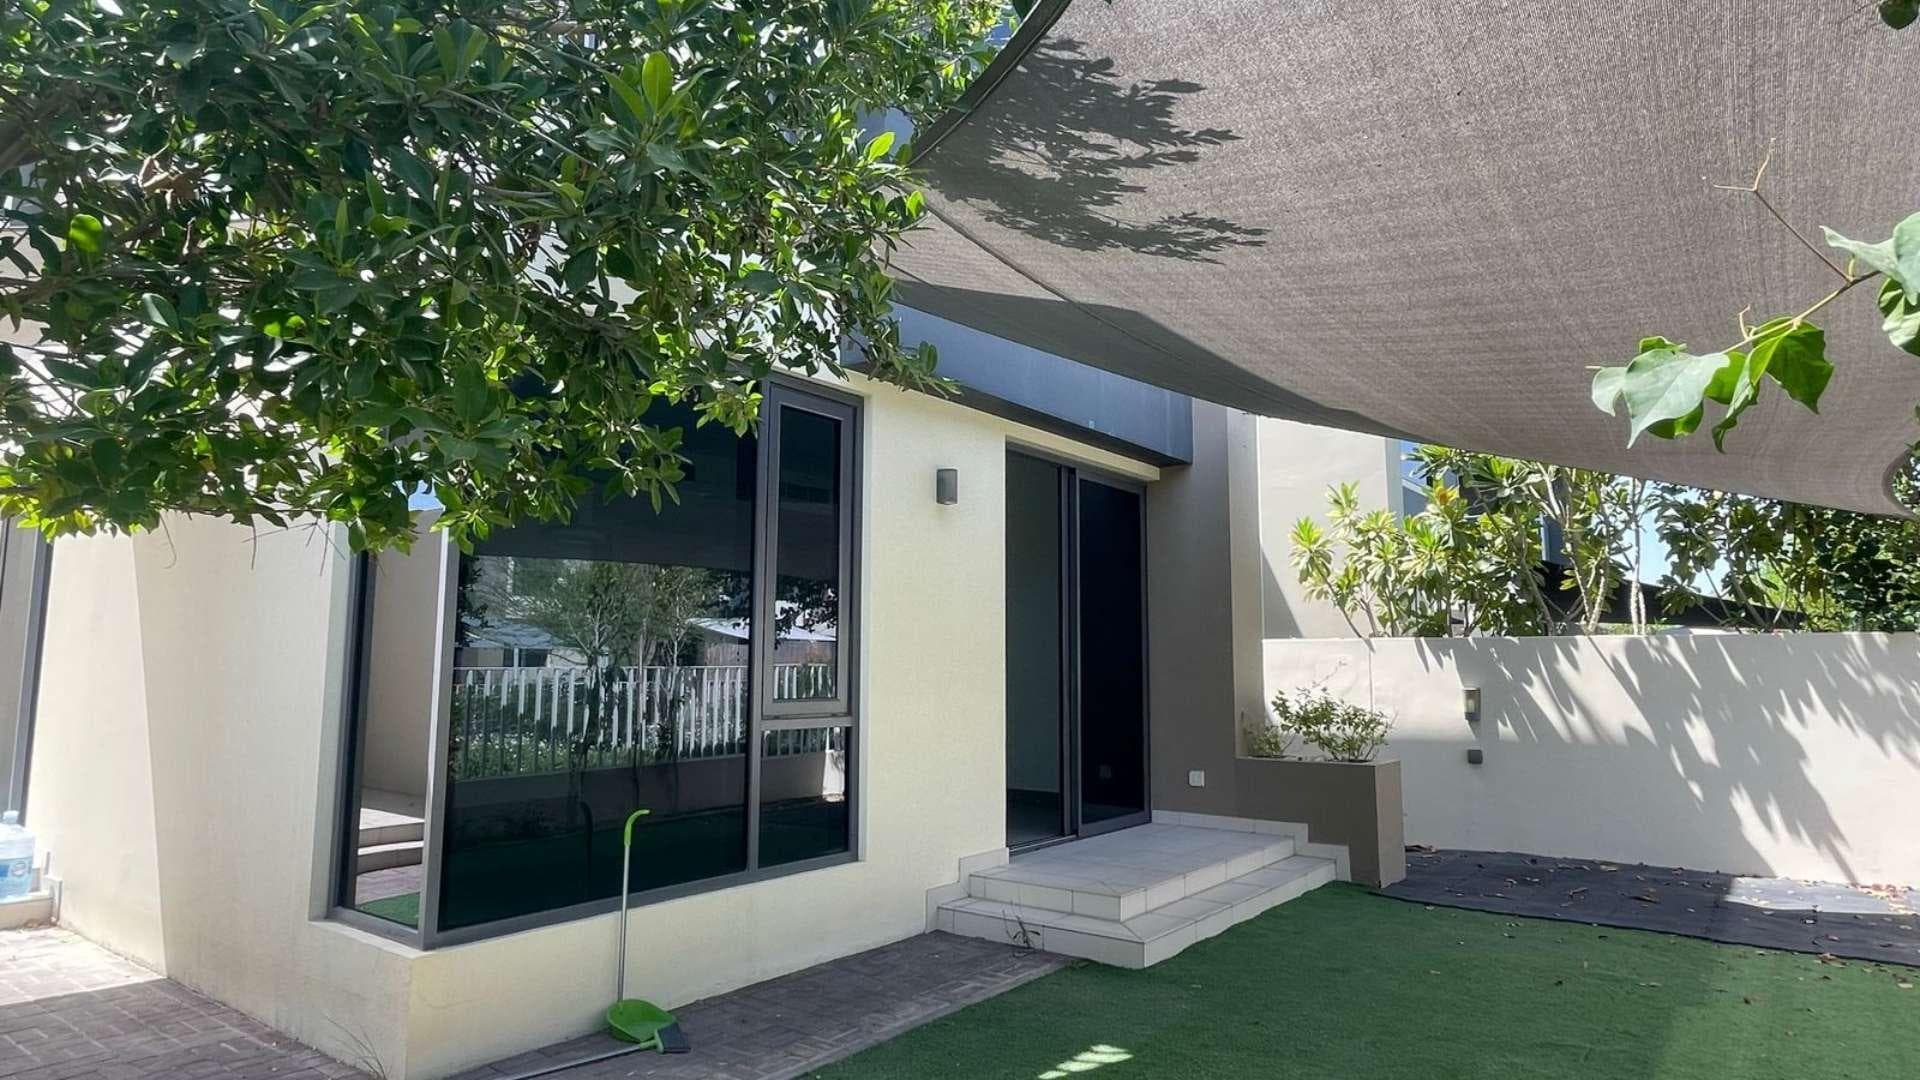 4 Bedroom Villa For Rent Maple At Dubai Hills Estate Lp37569 3459670170fbf8.jpg